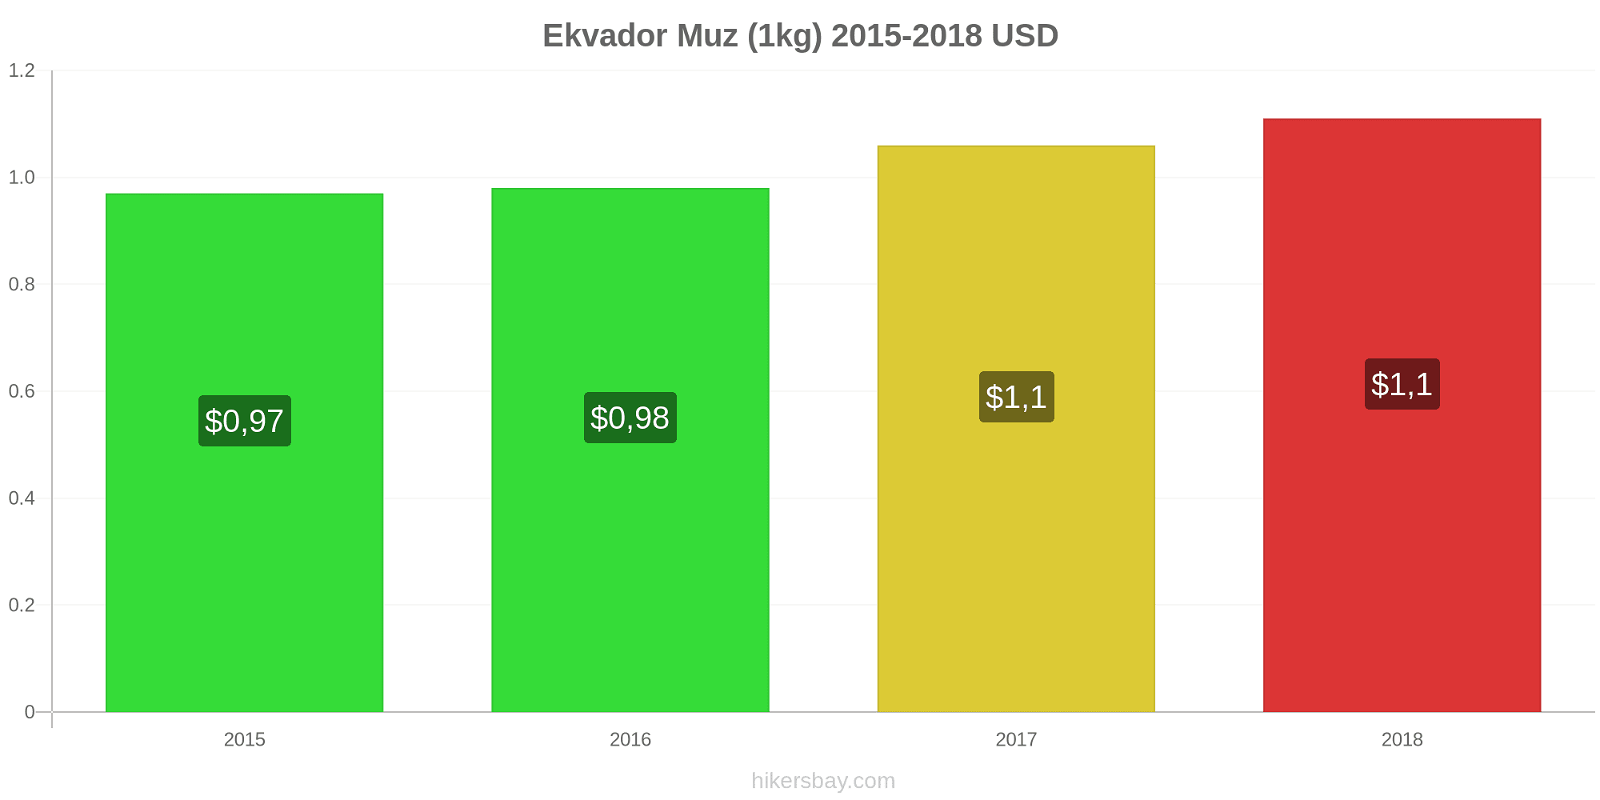 Ekvador fiyat değişiklikleri Muzlar (1kg) hikersbay.com